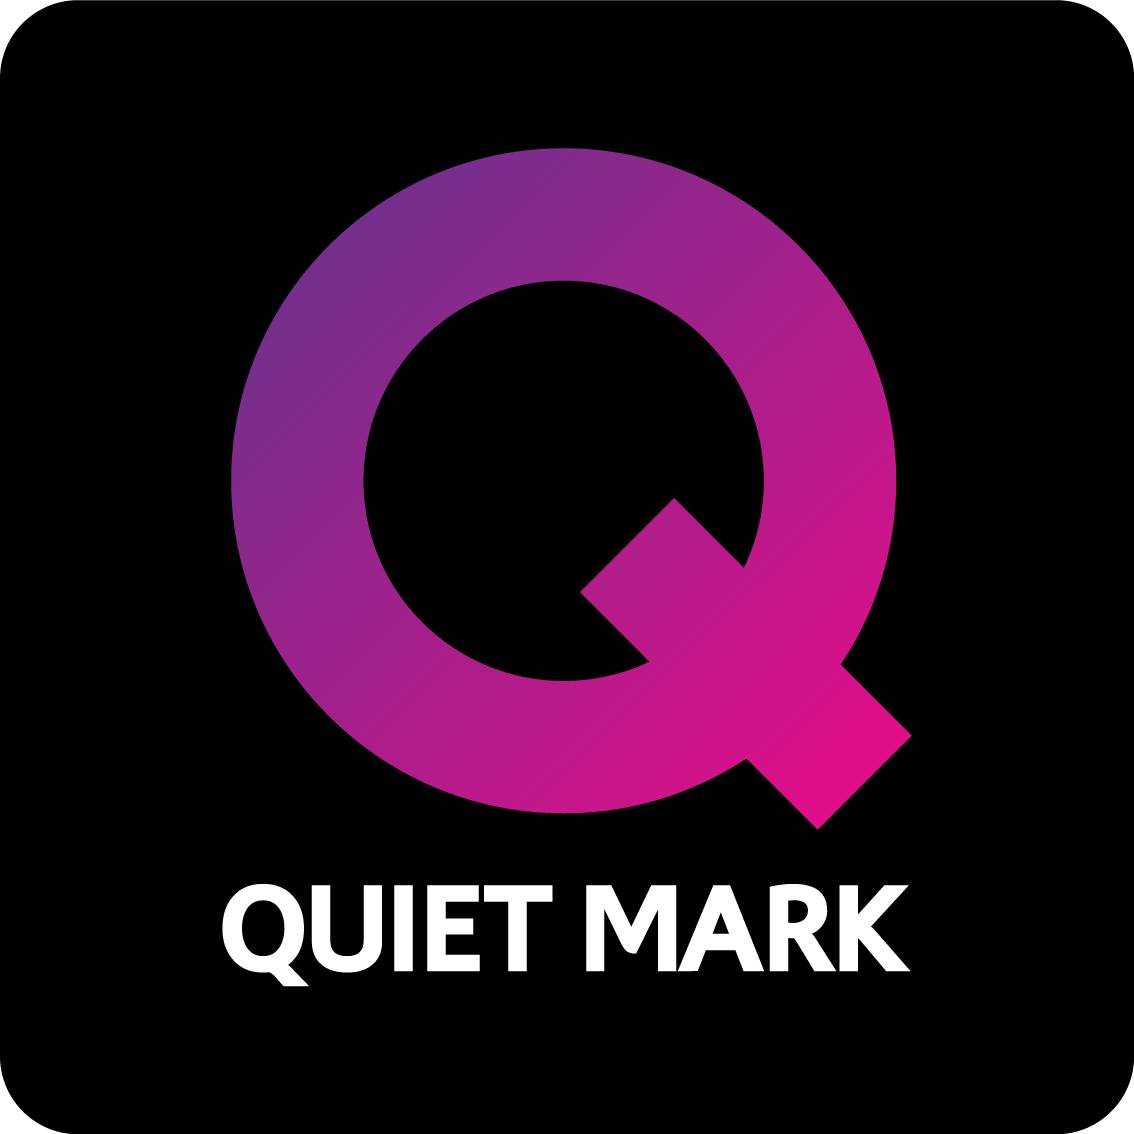 Quiet Mark Certification